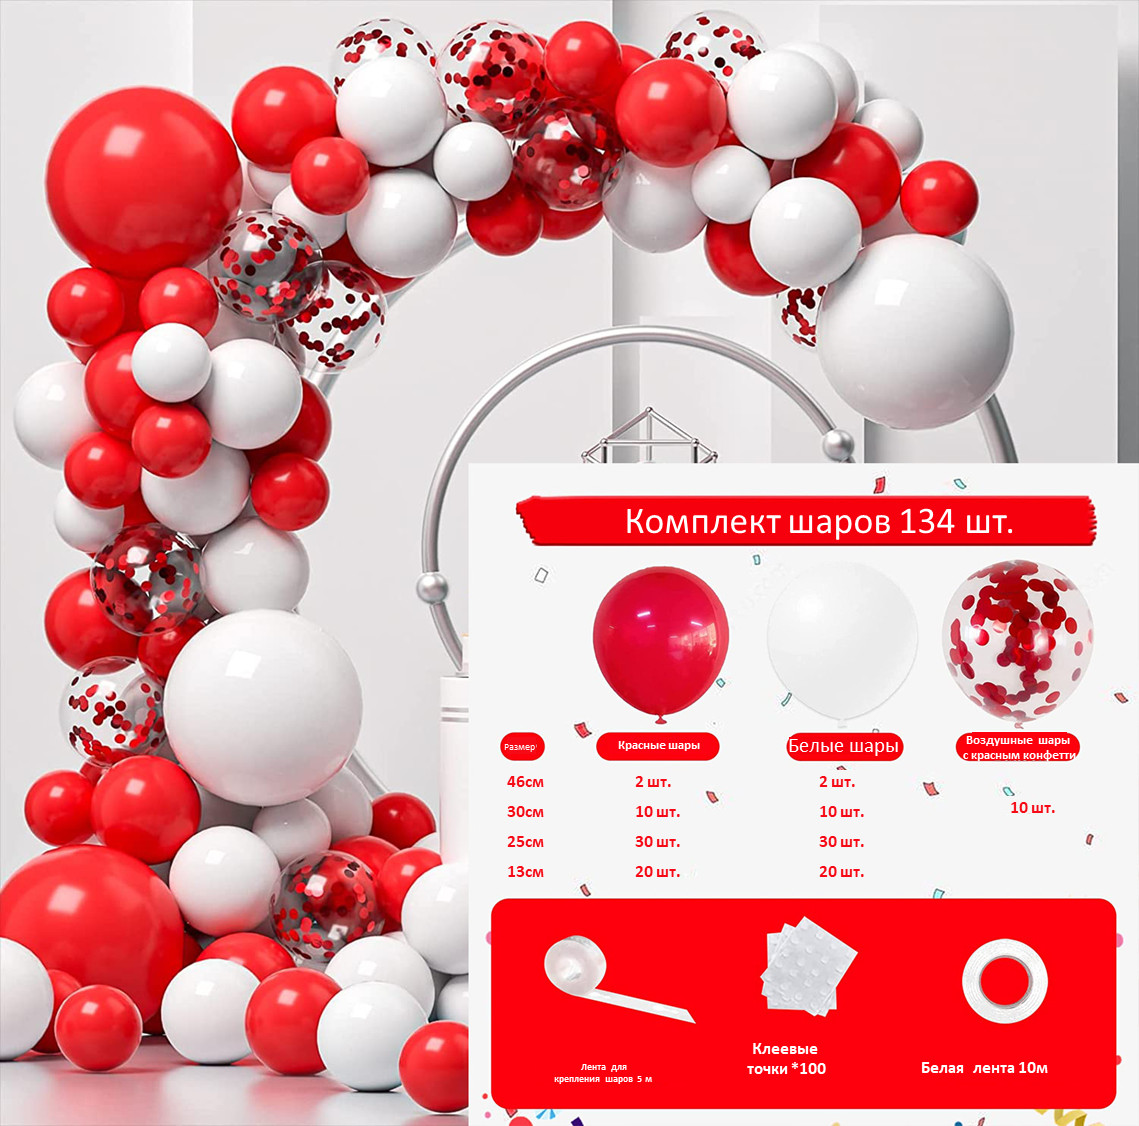 Набор воздушных шаров Красный костюм, красные и белые шары, 134 шт